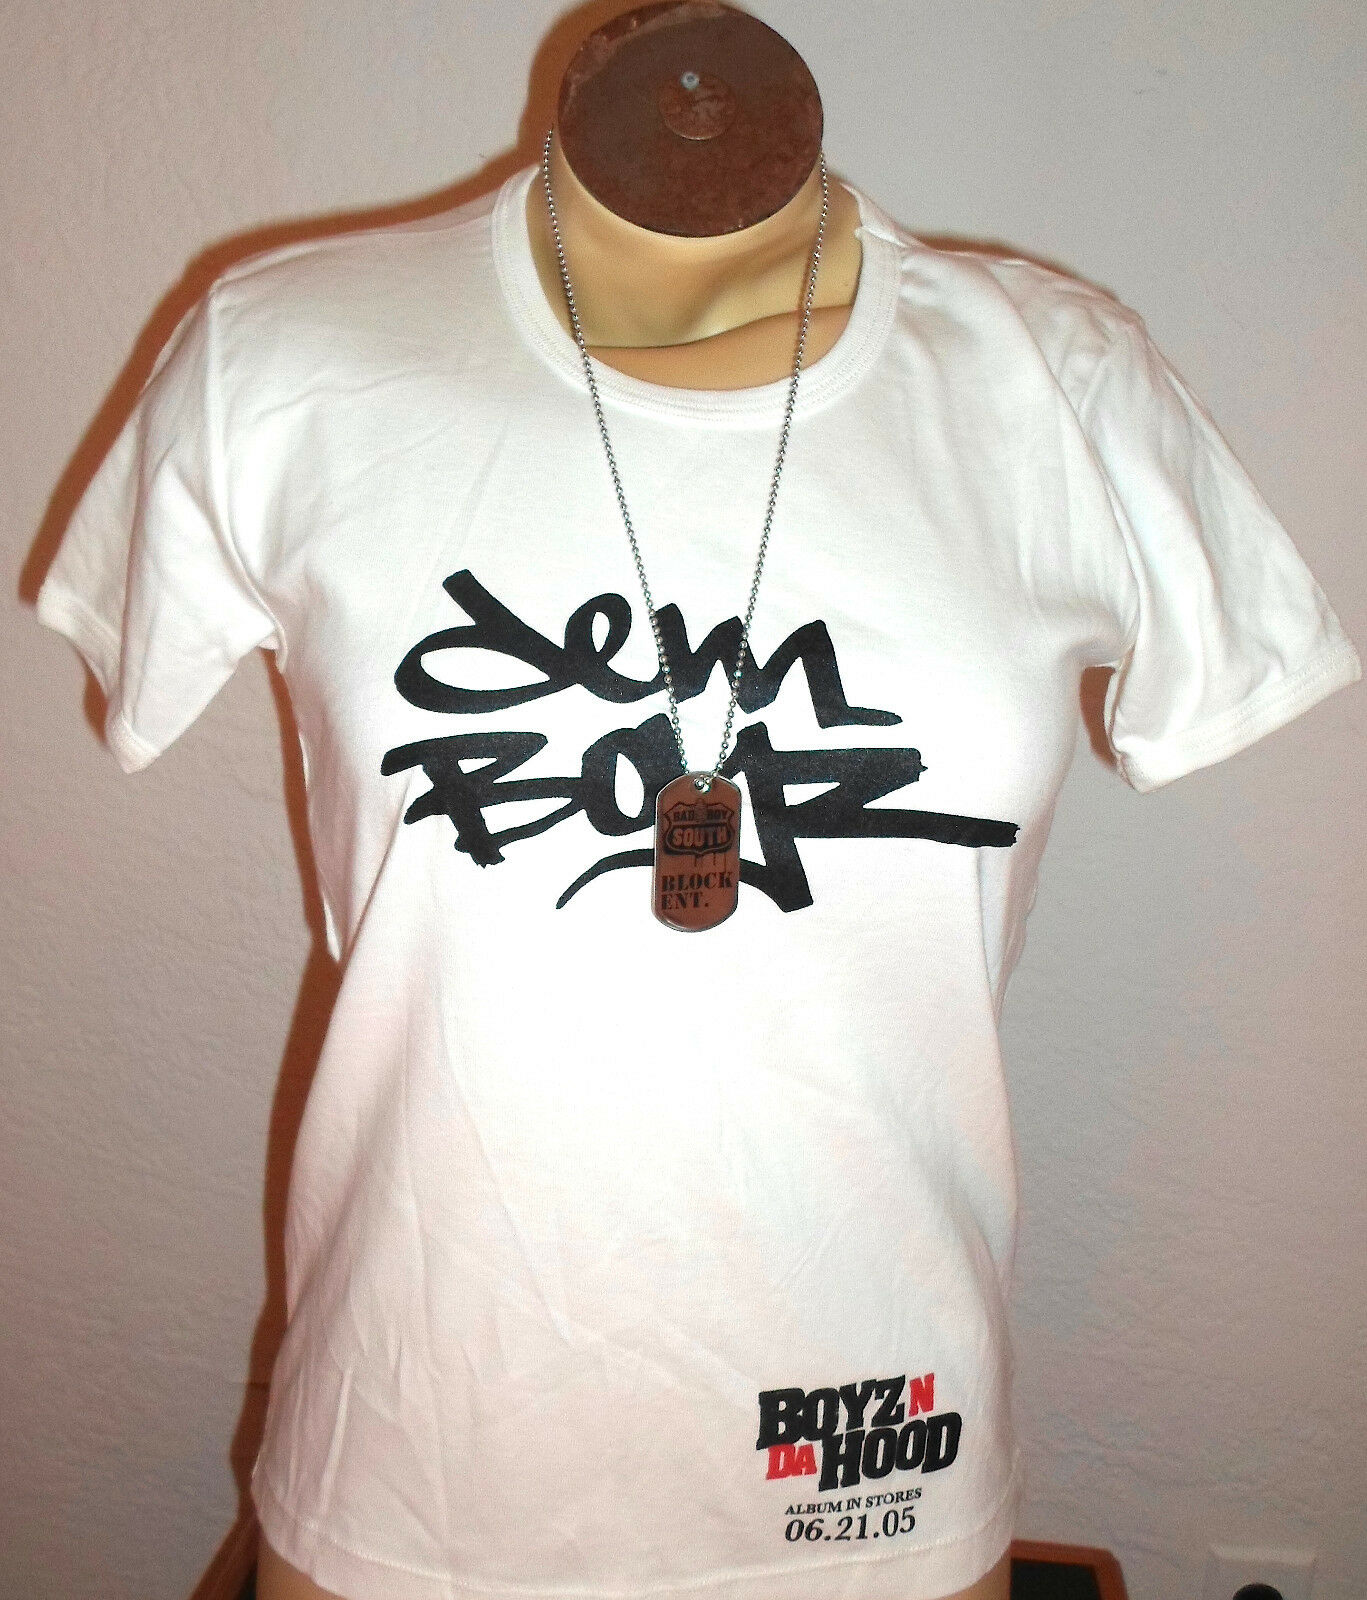 Boyz N Da Hood Dem Boyz Promo T-shirt W/dogtag (2005, Girls Lg) New Never Worn